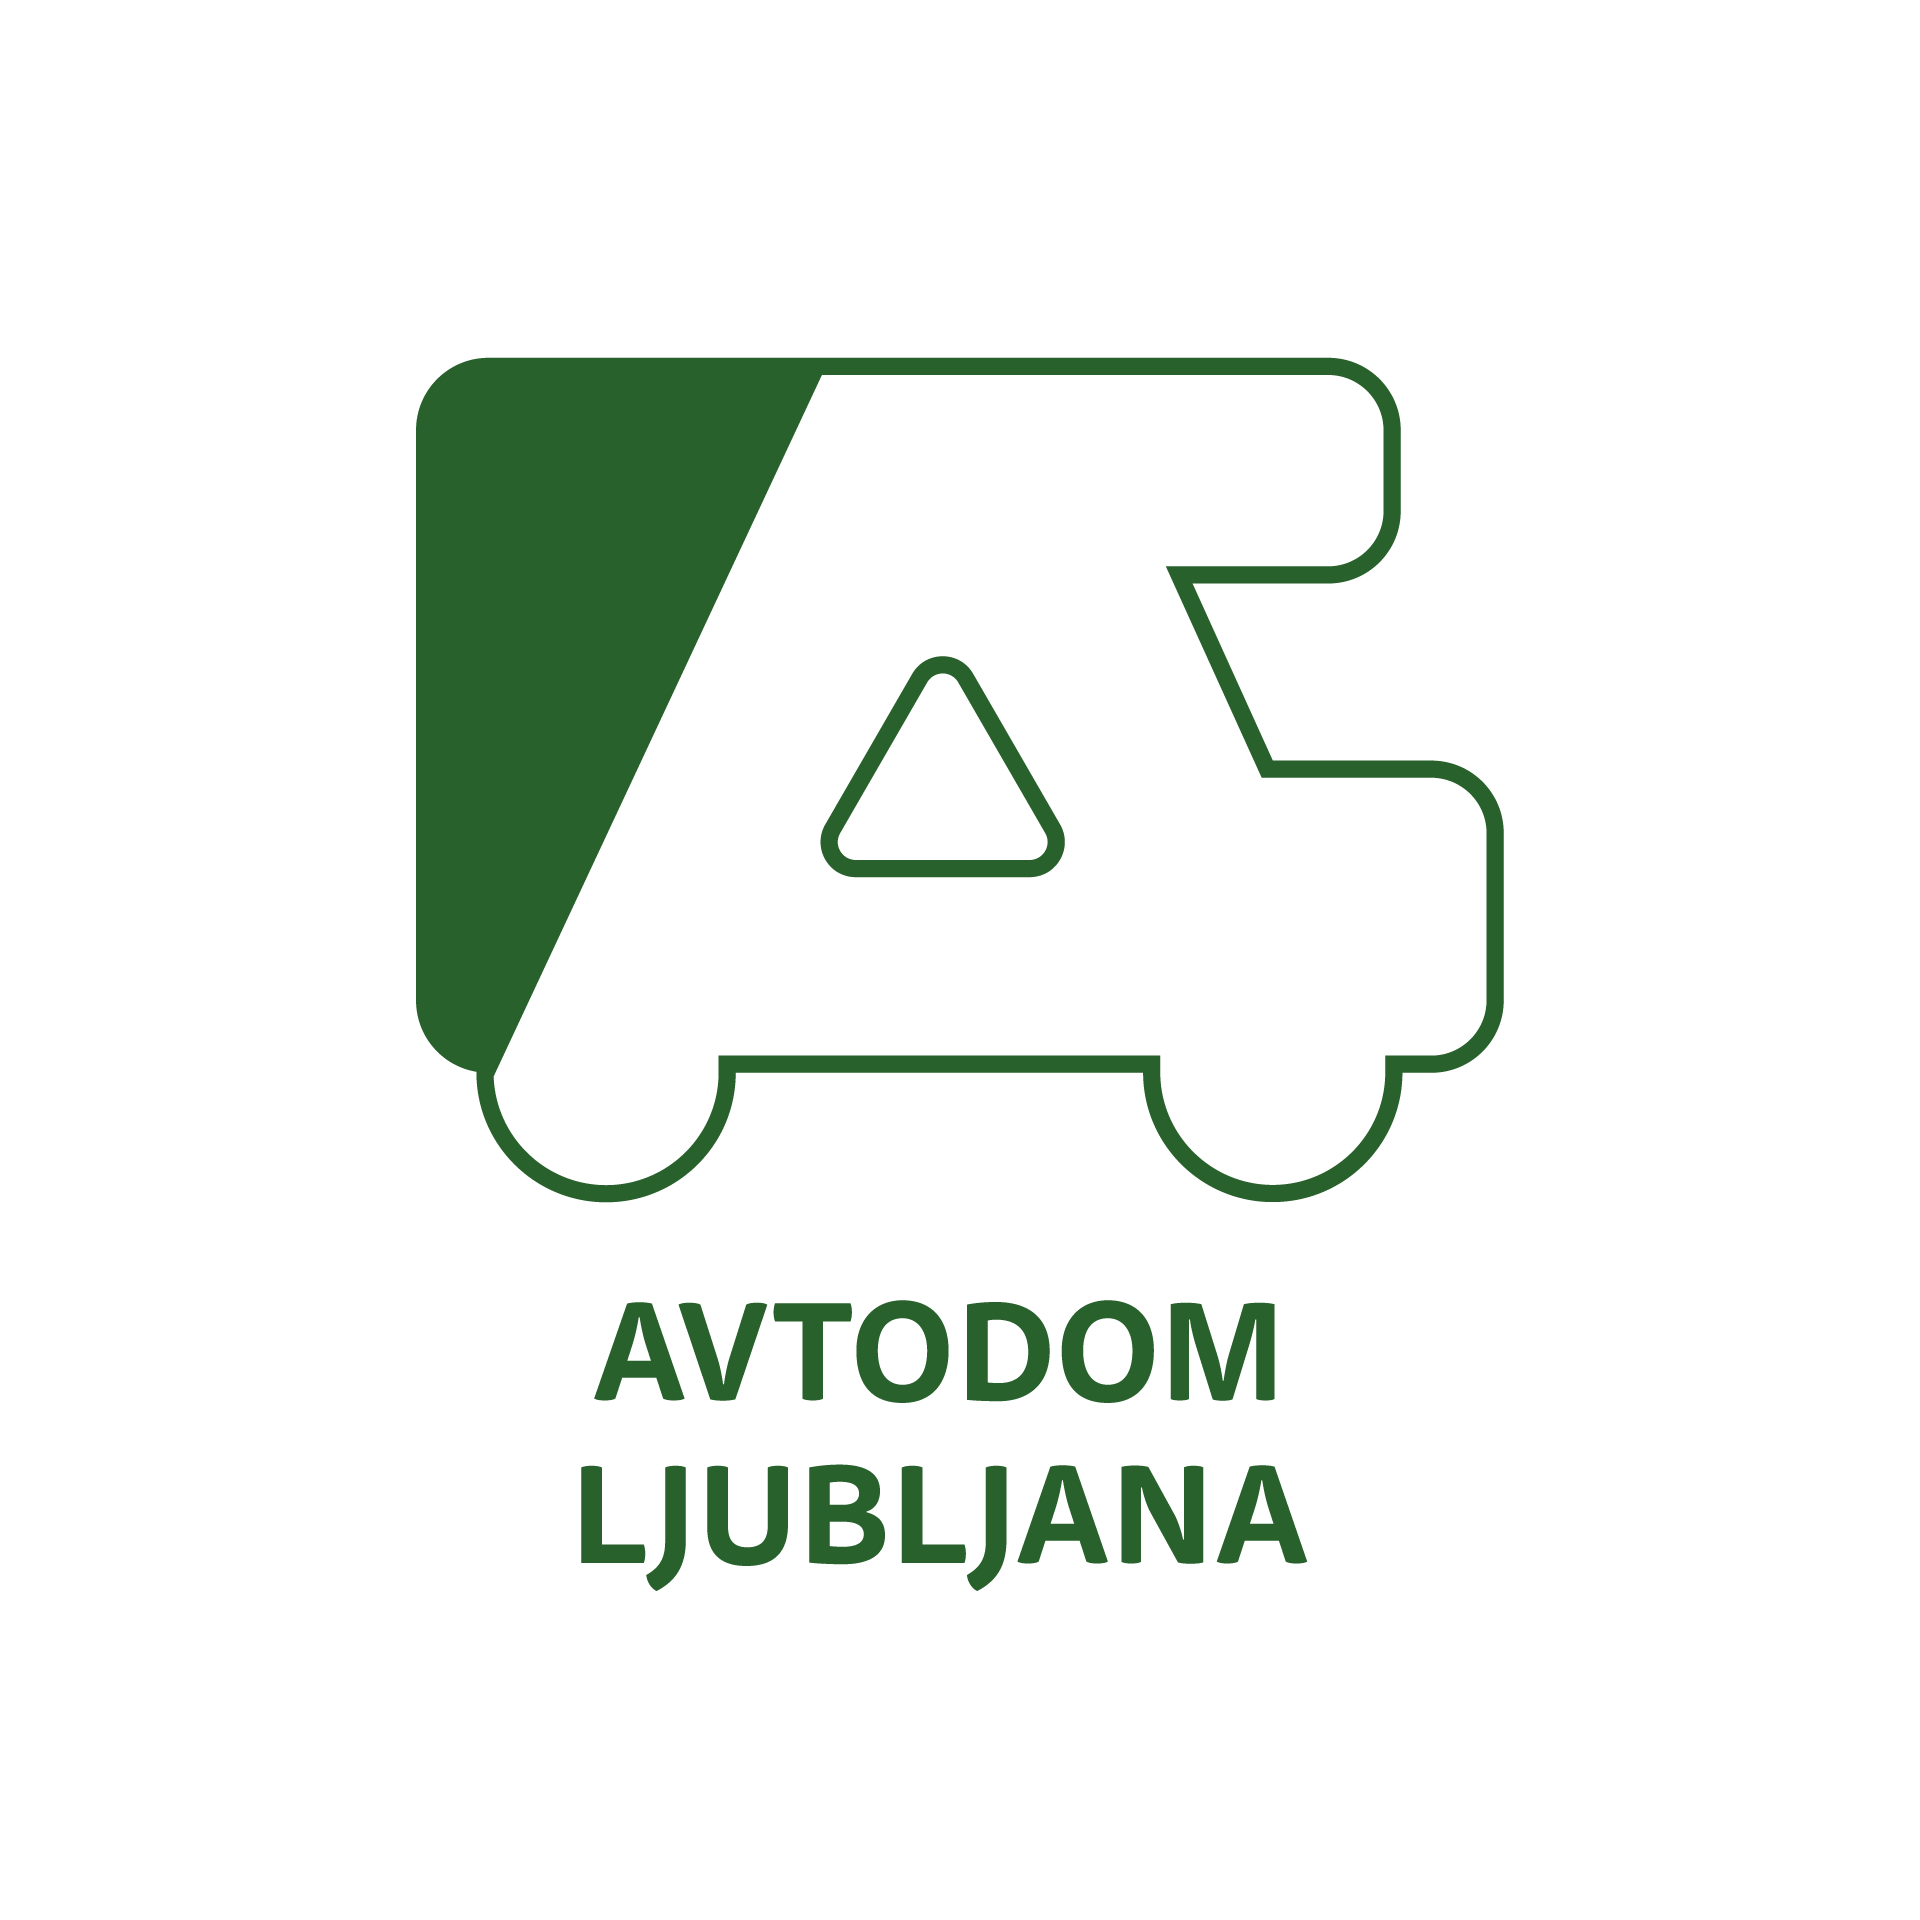 Avtodom Ljubljana